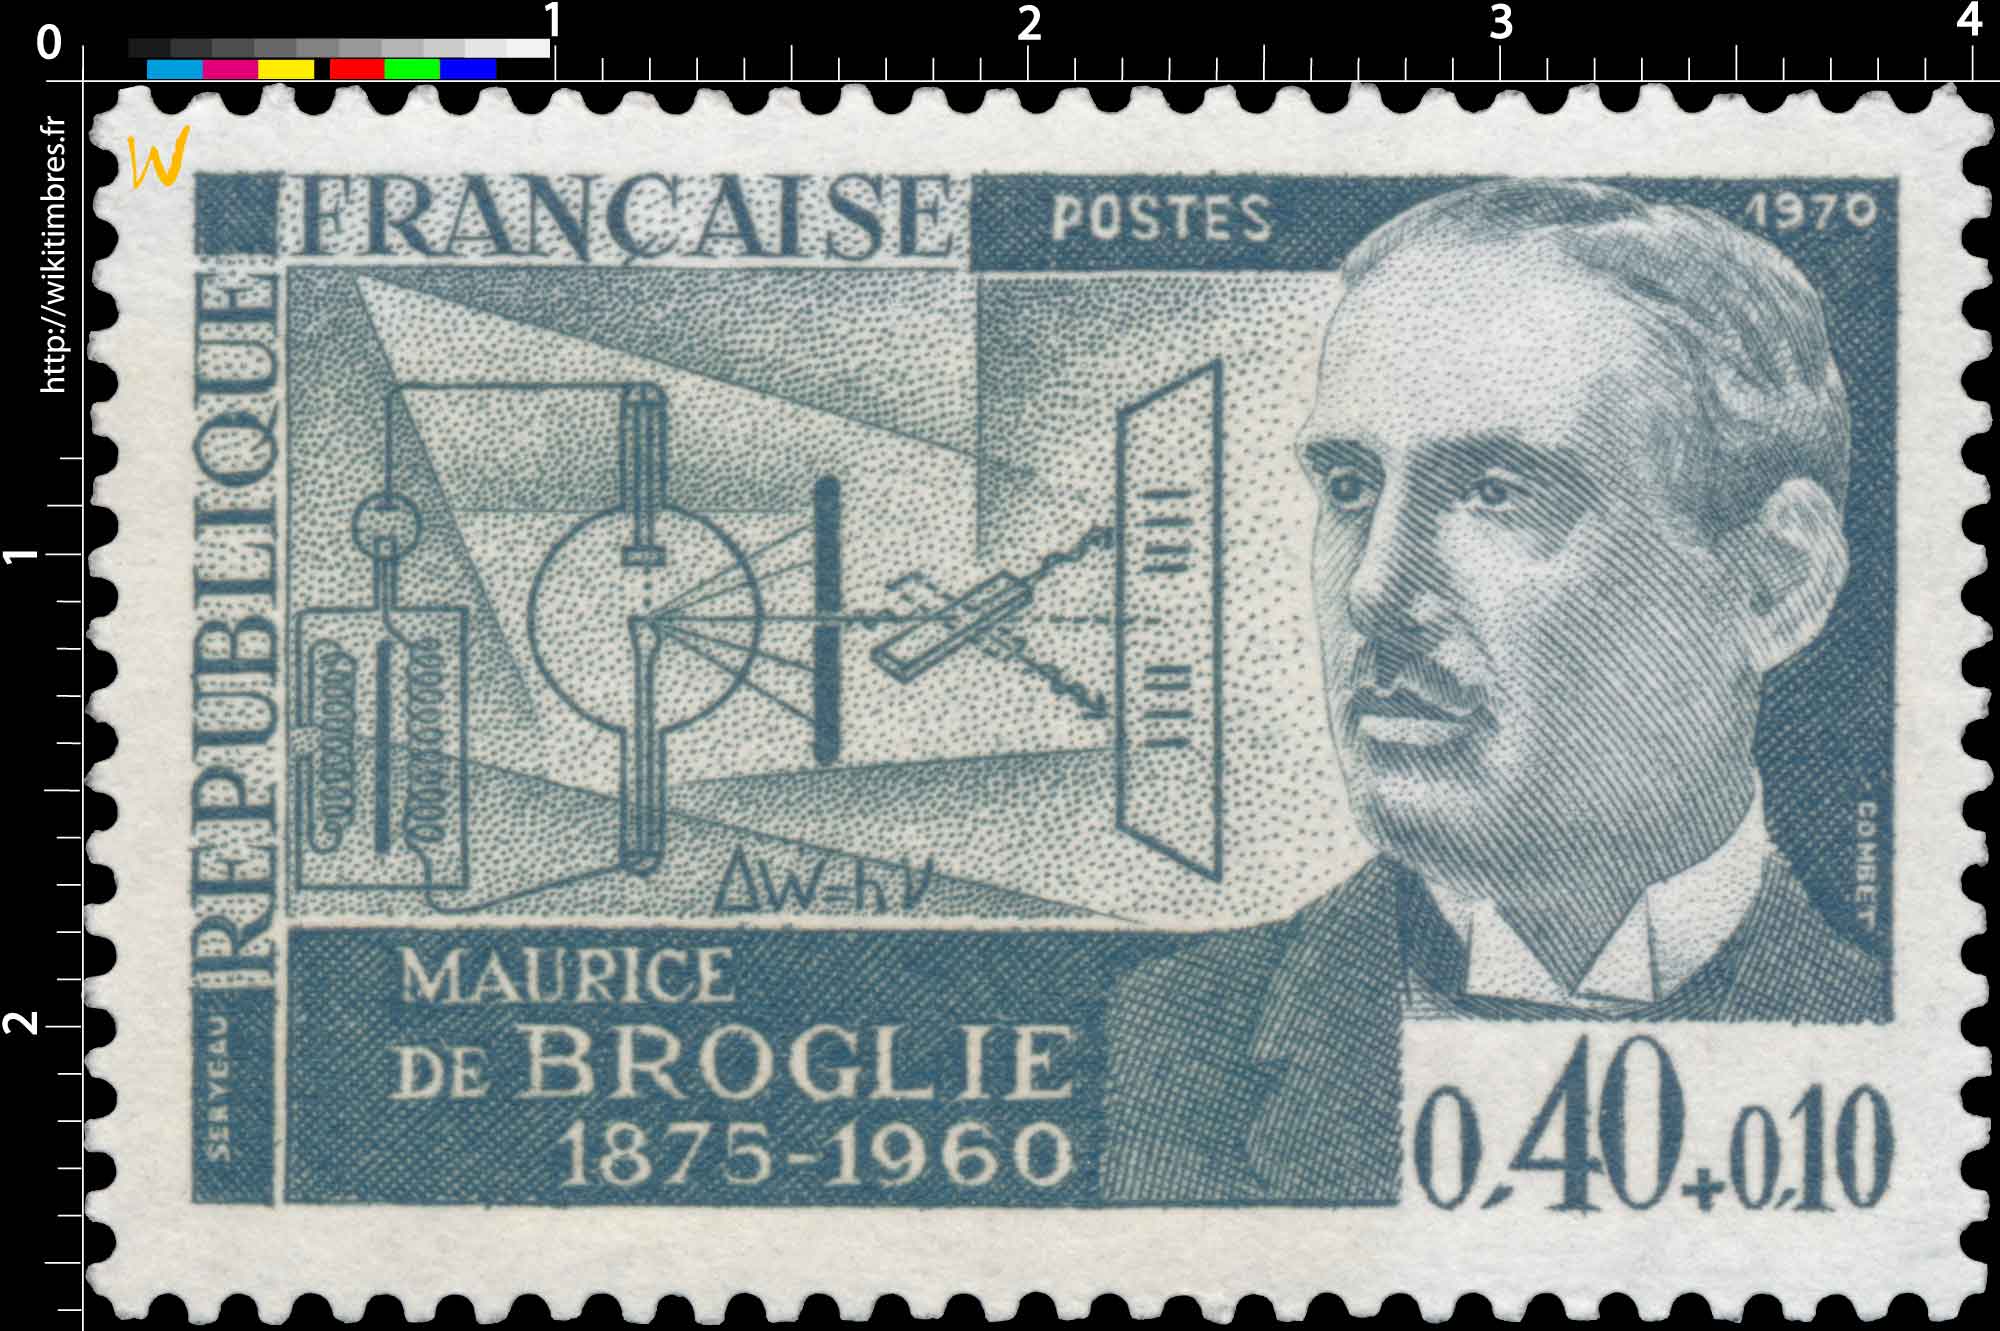 1970 MAURICE DE BROGLIE 1875-1960